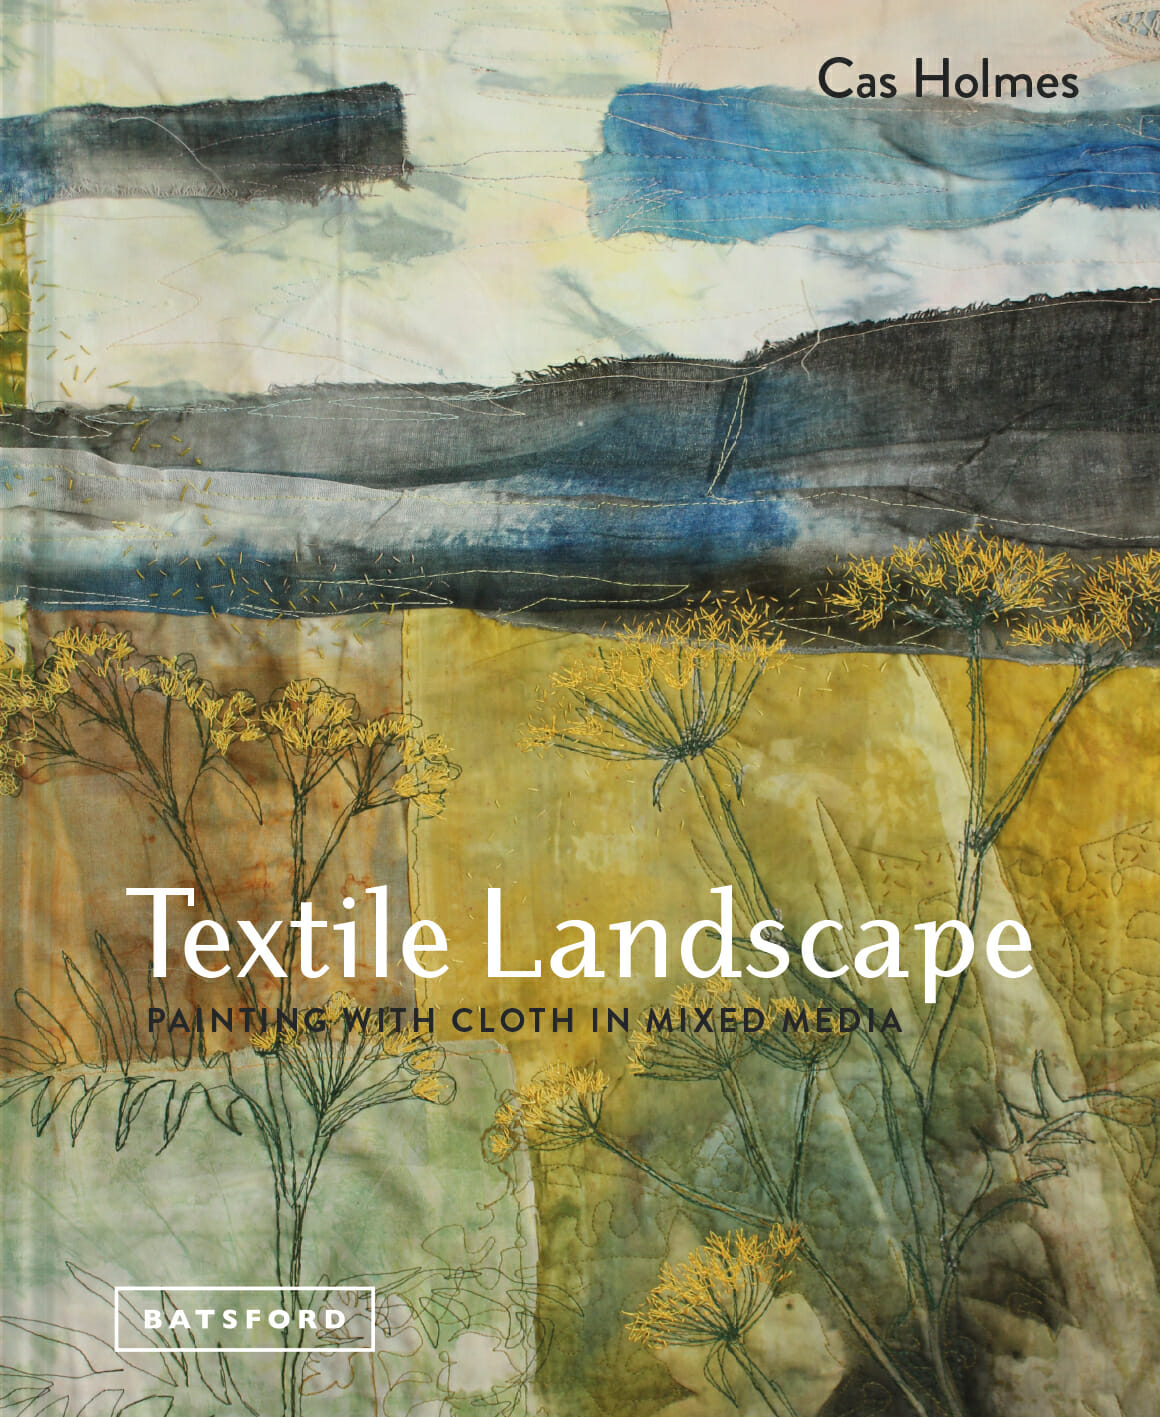 Cas Holmes – Textile Landscape